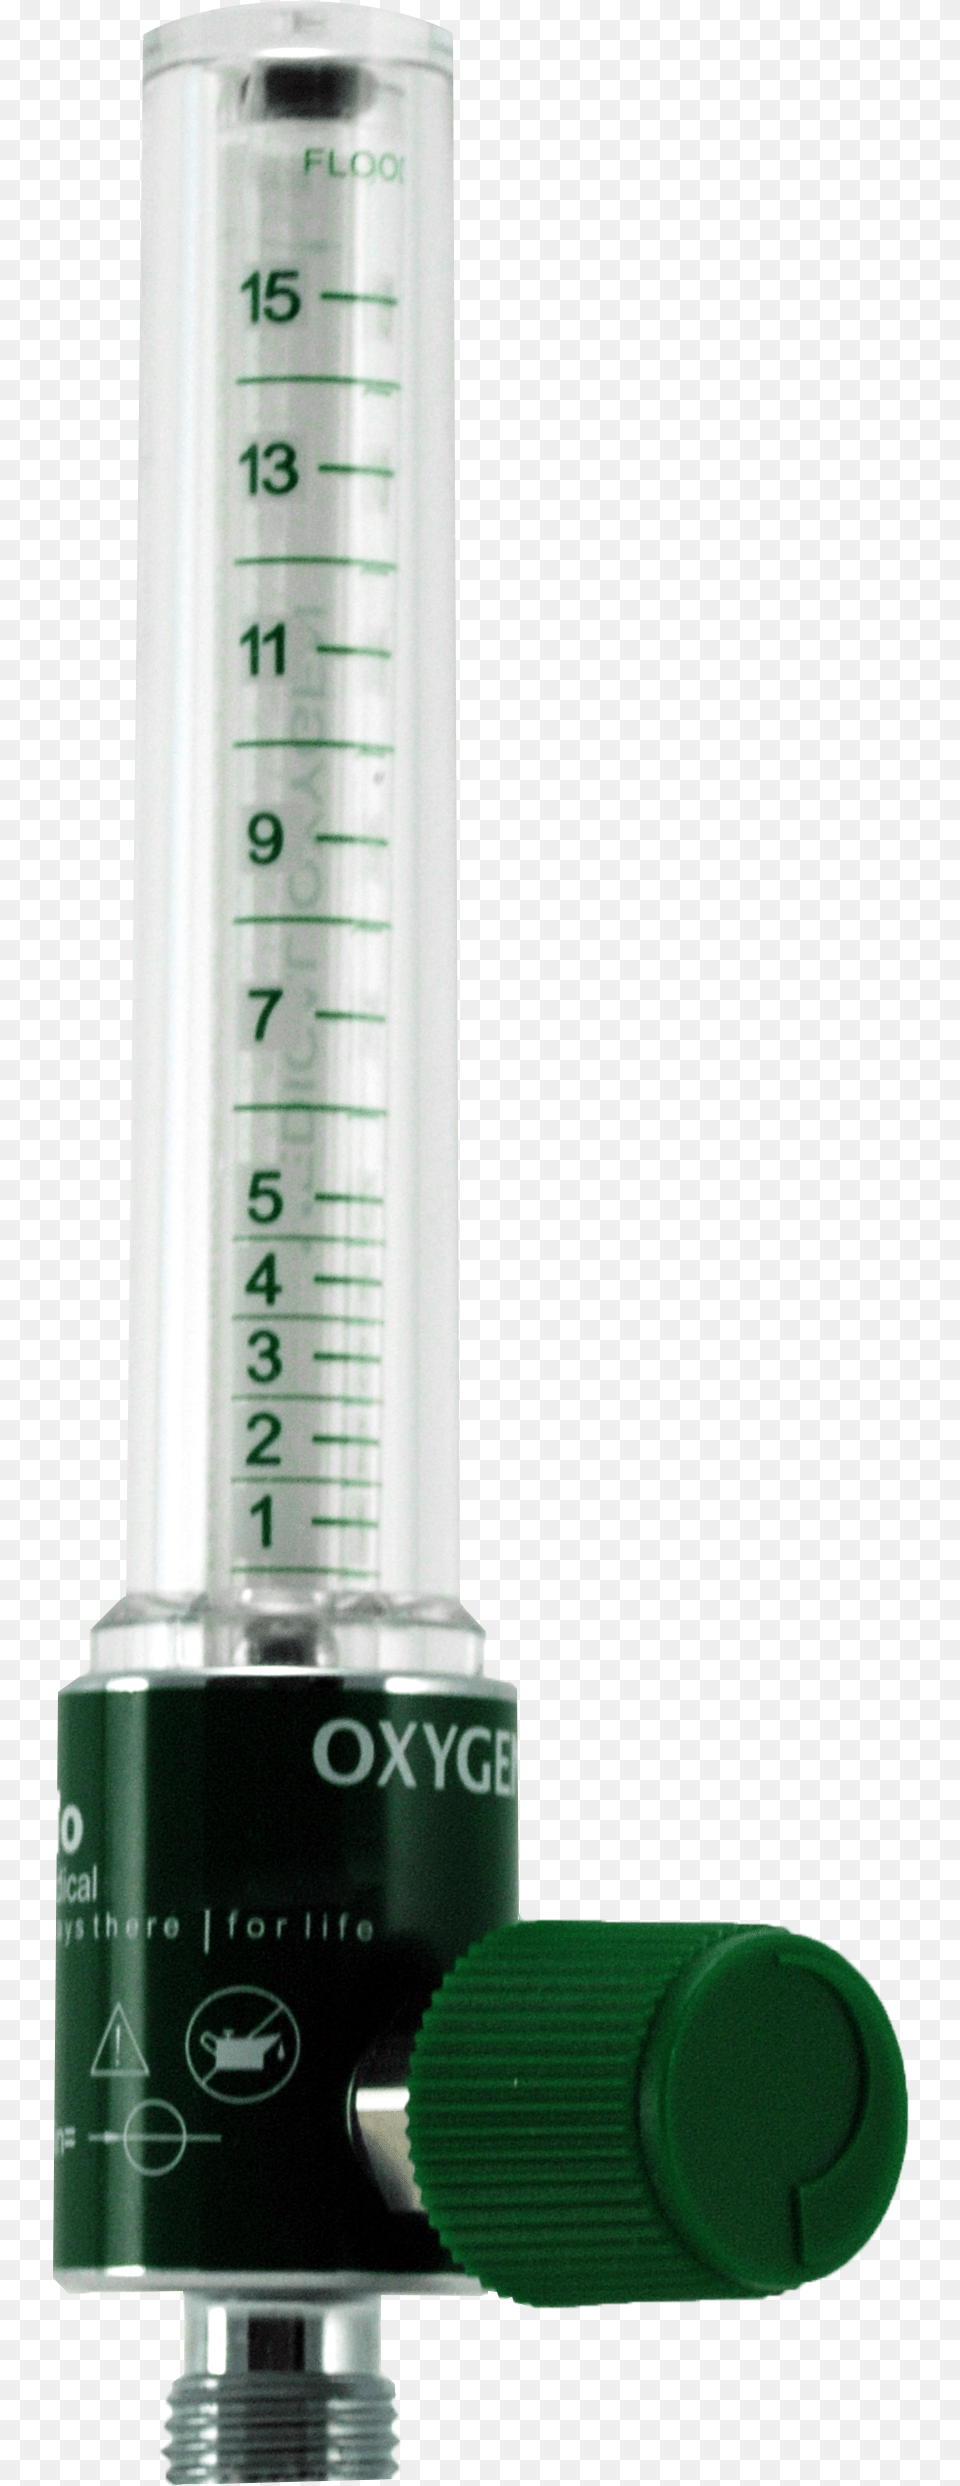 Show Oxygen Flowmeter Ohio Oxygen Flow Meter, Cup Png Image